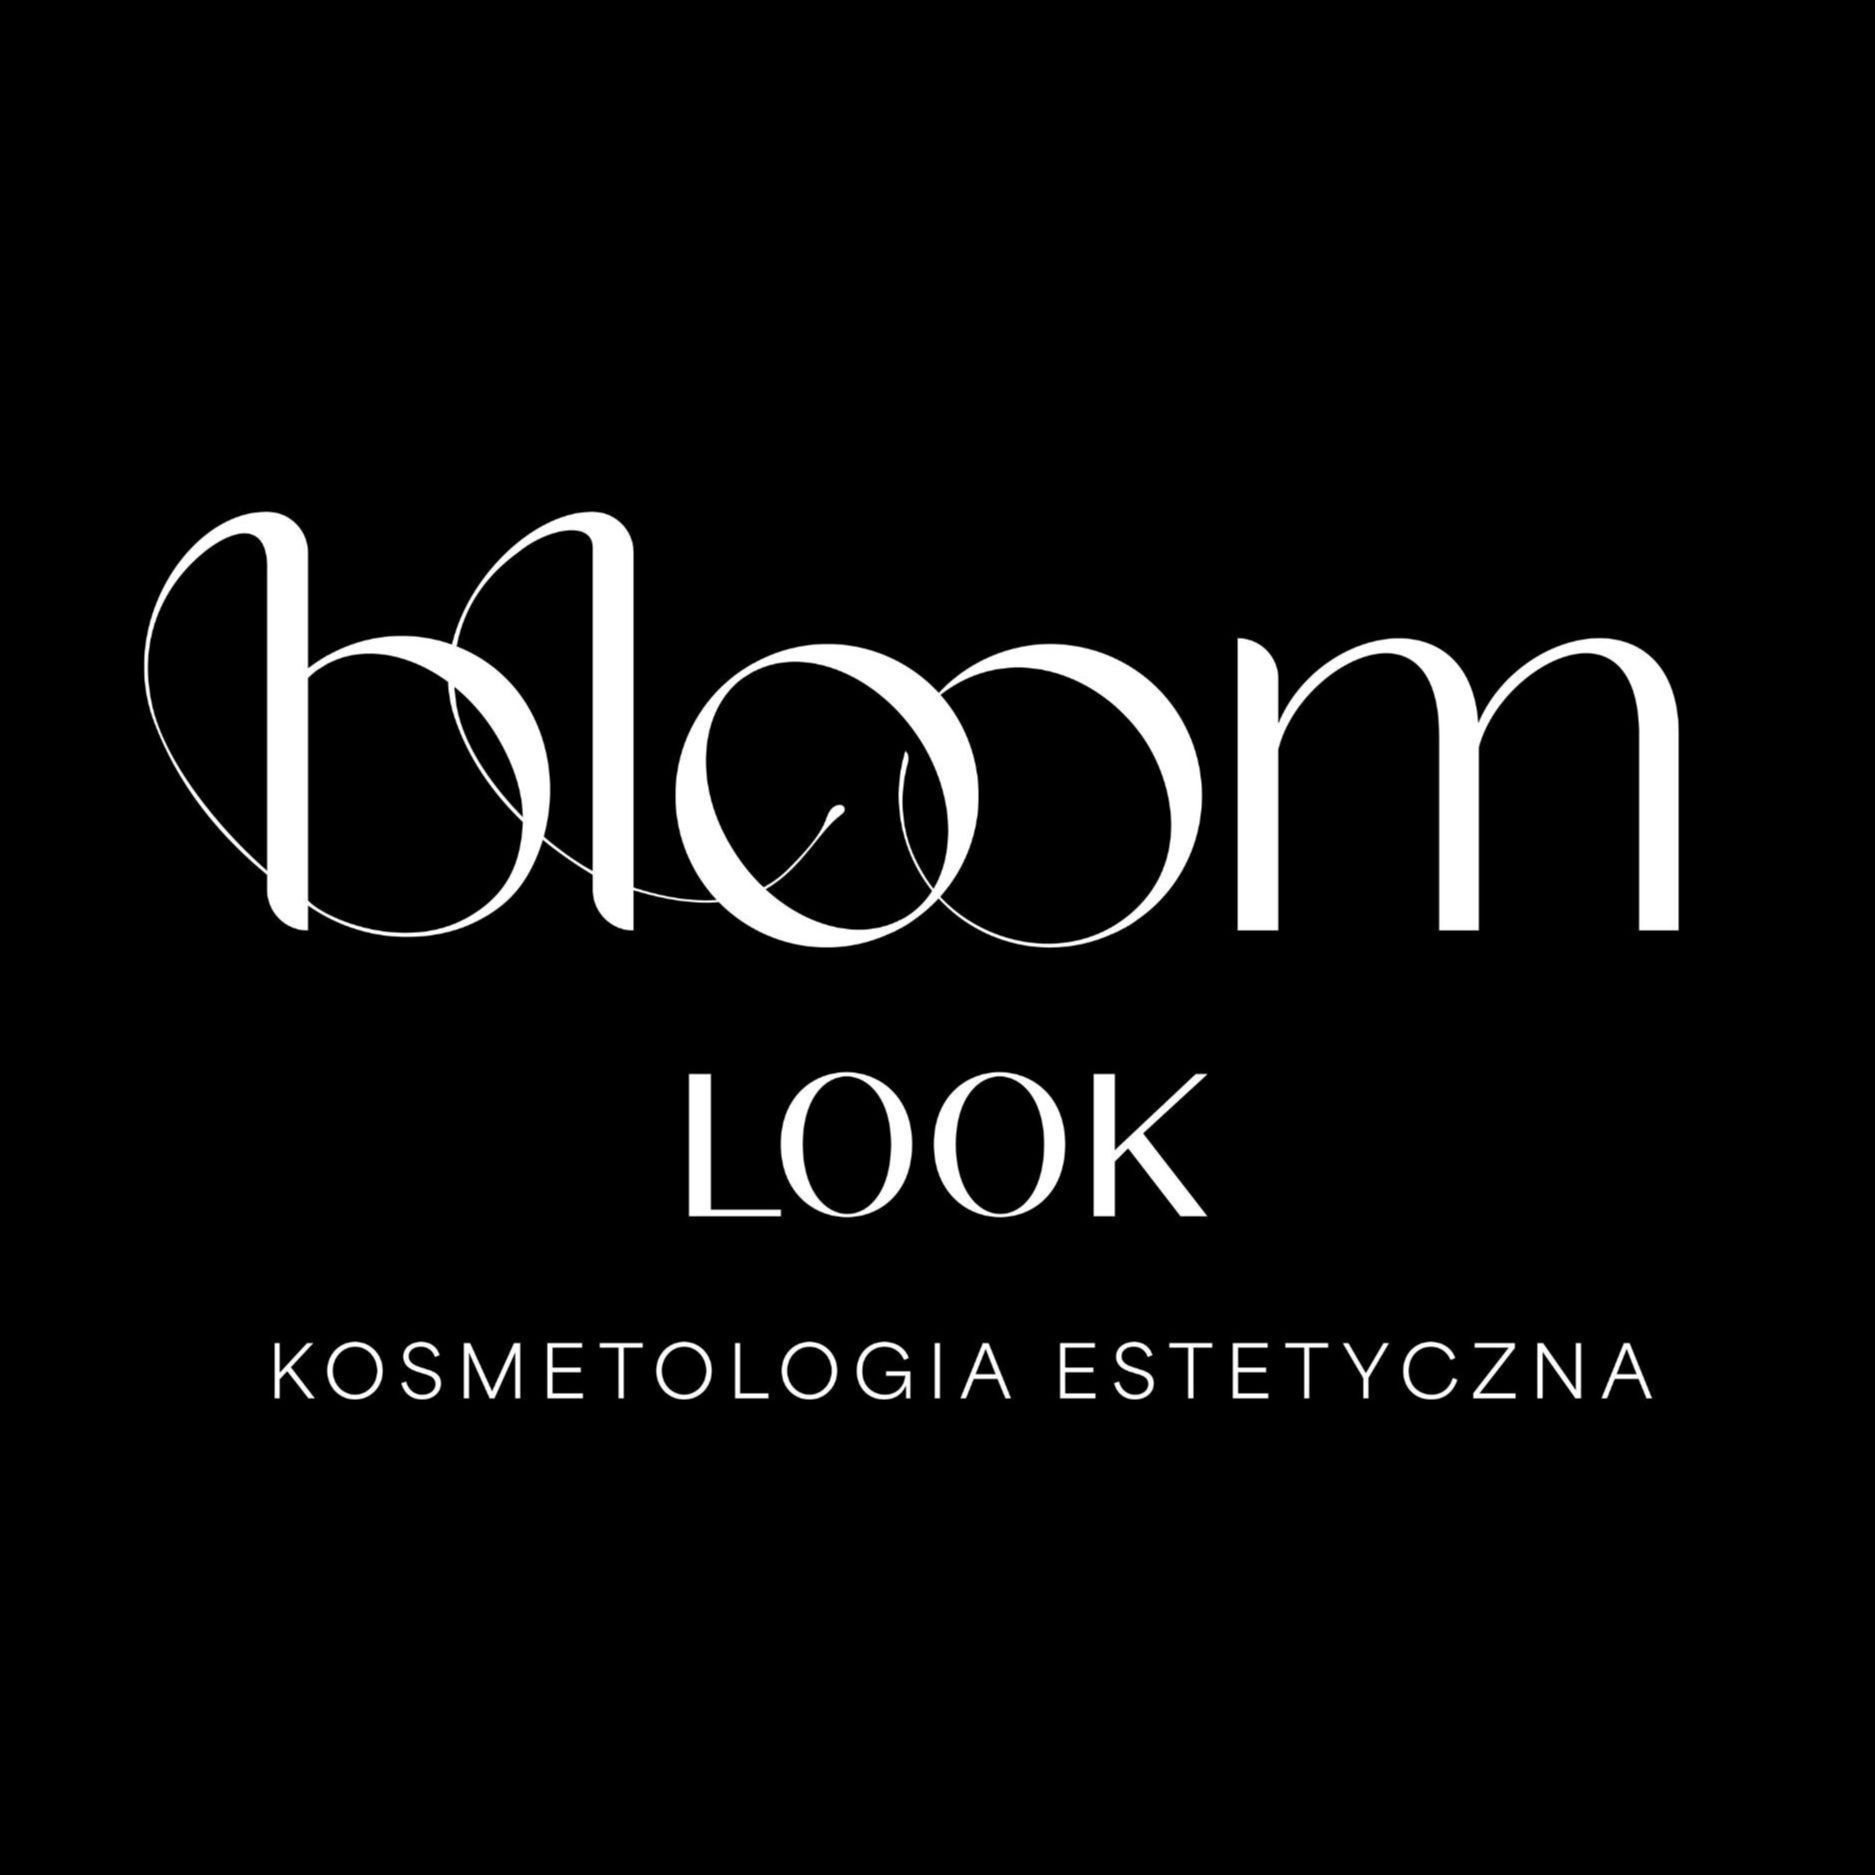 Bloom Look Kosmetologia Estetyczna, Mrągowska 34A, 04-988, Warszawa, Wawer